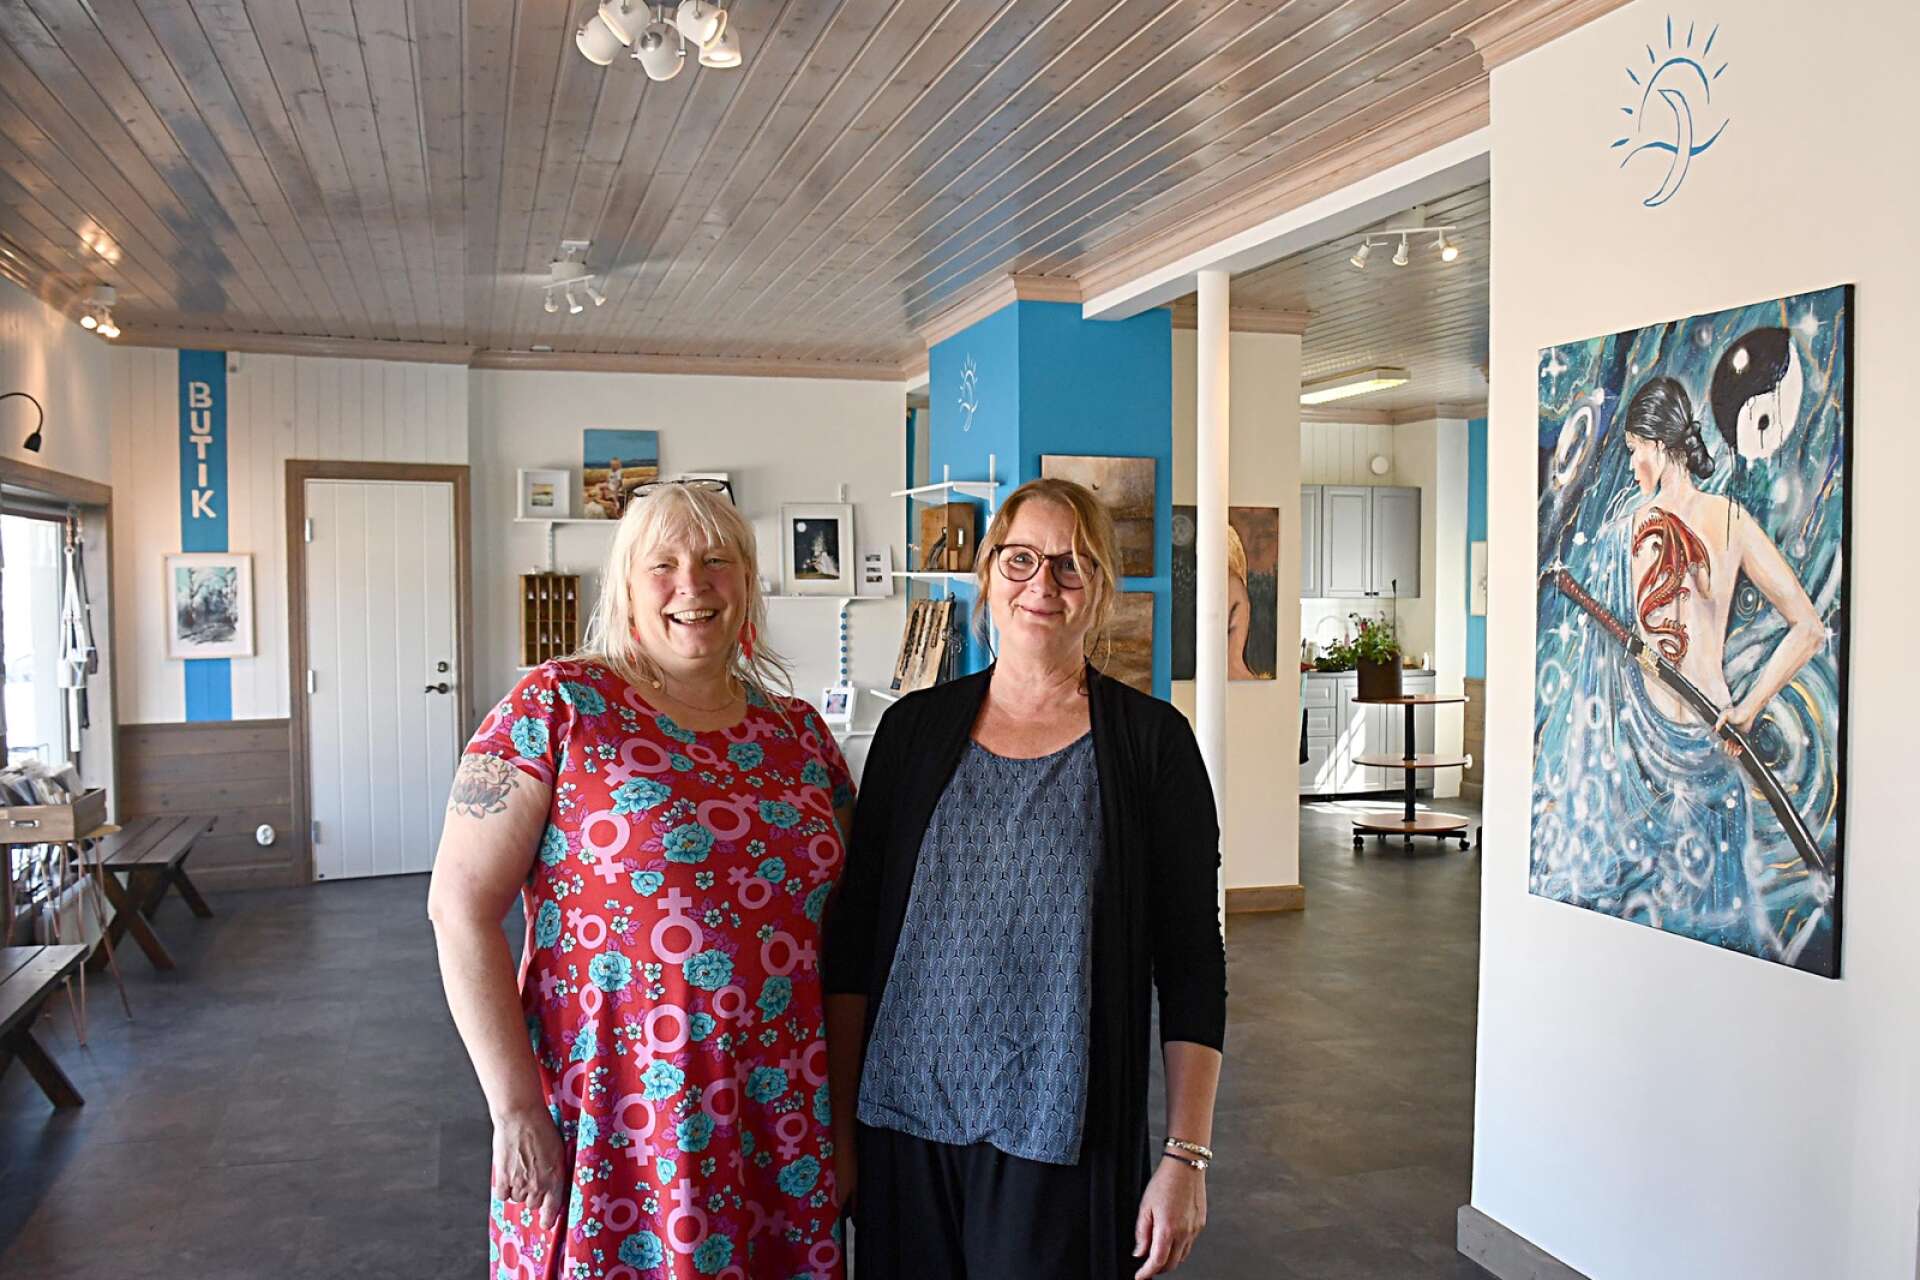 ”Vi bjuder in alla att komma med idéer som kan utveckla verksamheten”, säger Mia Älegård och Kristin Oladatter Steen som snart öppnar Galleri Himmel och hav i Sunne.